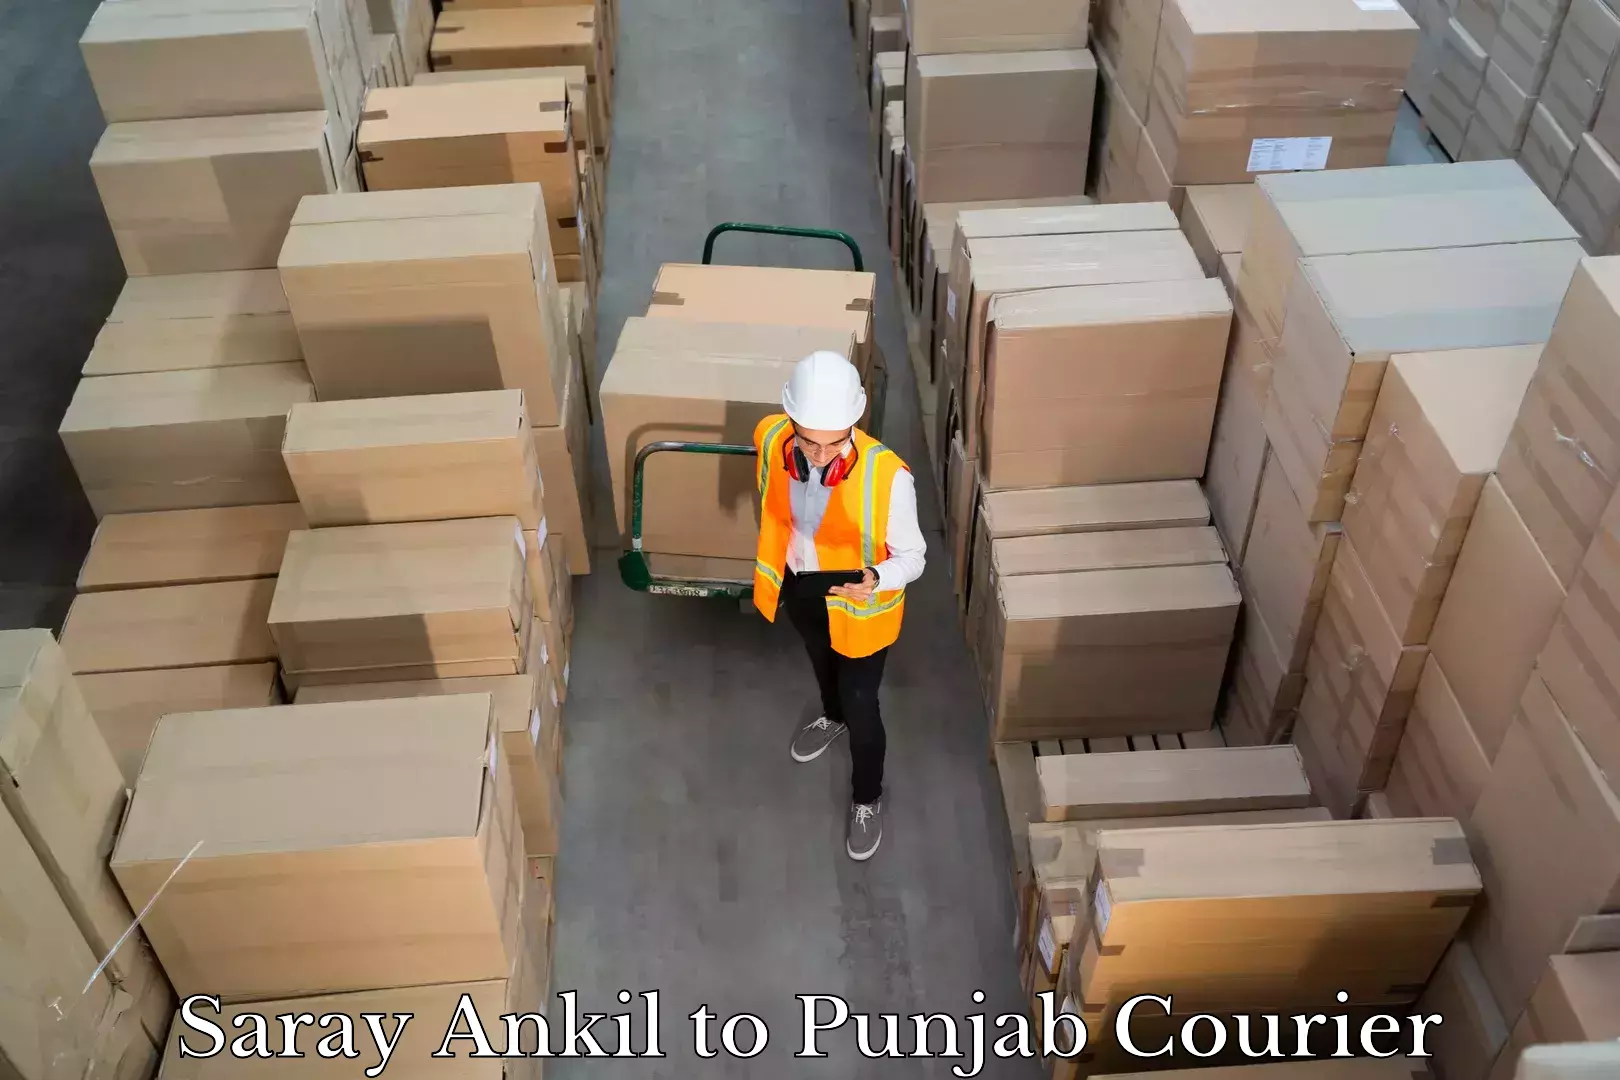 Luggage transport company Saray Ankil to Central University of Punjab Bathinda